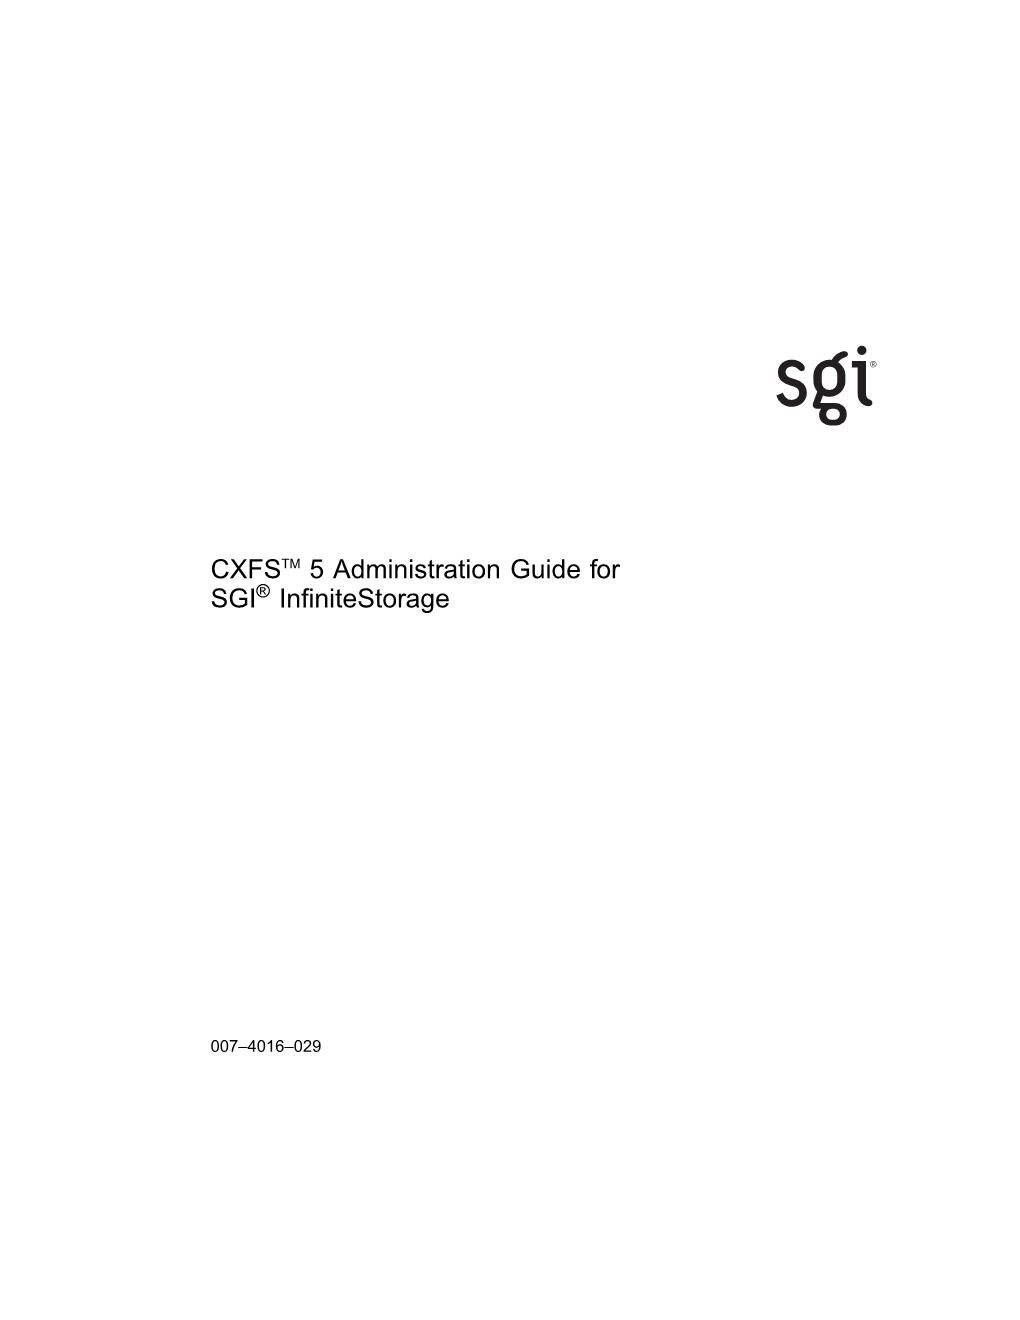 CXFSTM 5 Administration Guide for SGI® Infinitestorage